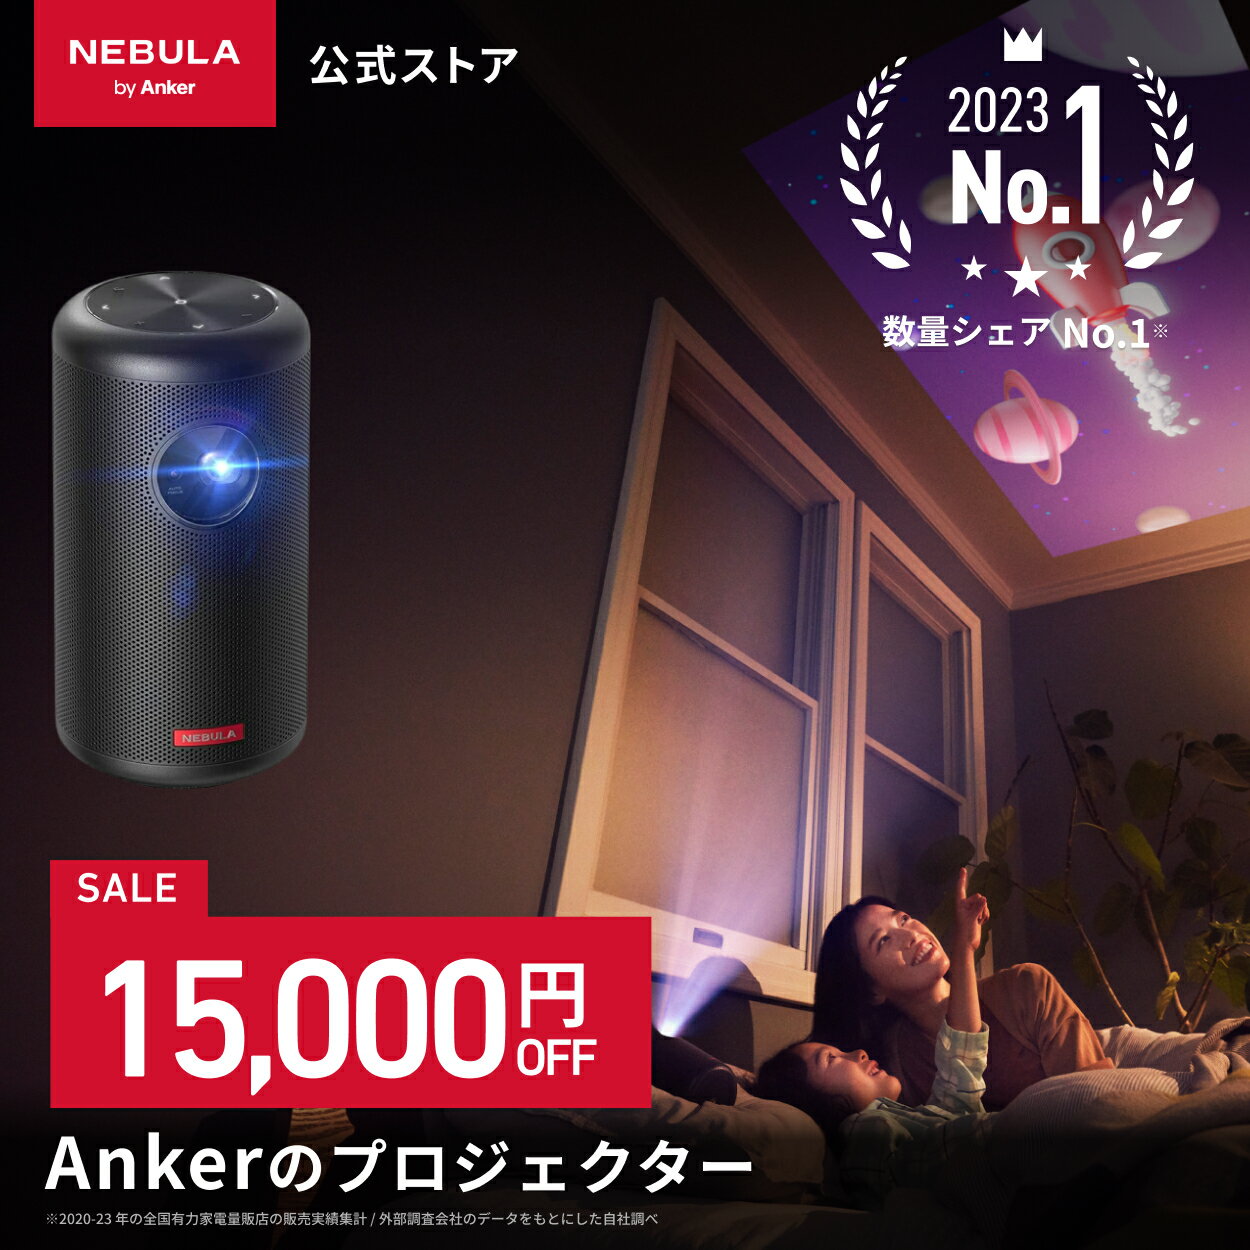 【6/1限定 最大10%OFFクーポン】Anker Nebula Capsule II 世界初 Android TV搭載 モバイルプロジェクター 【200 ANSIルーメン / オートフォーカス機能 / 8W スピーカー】